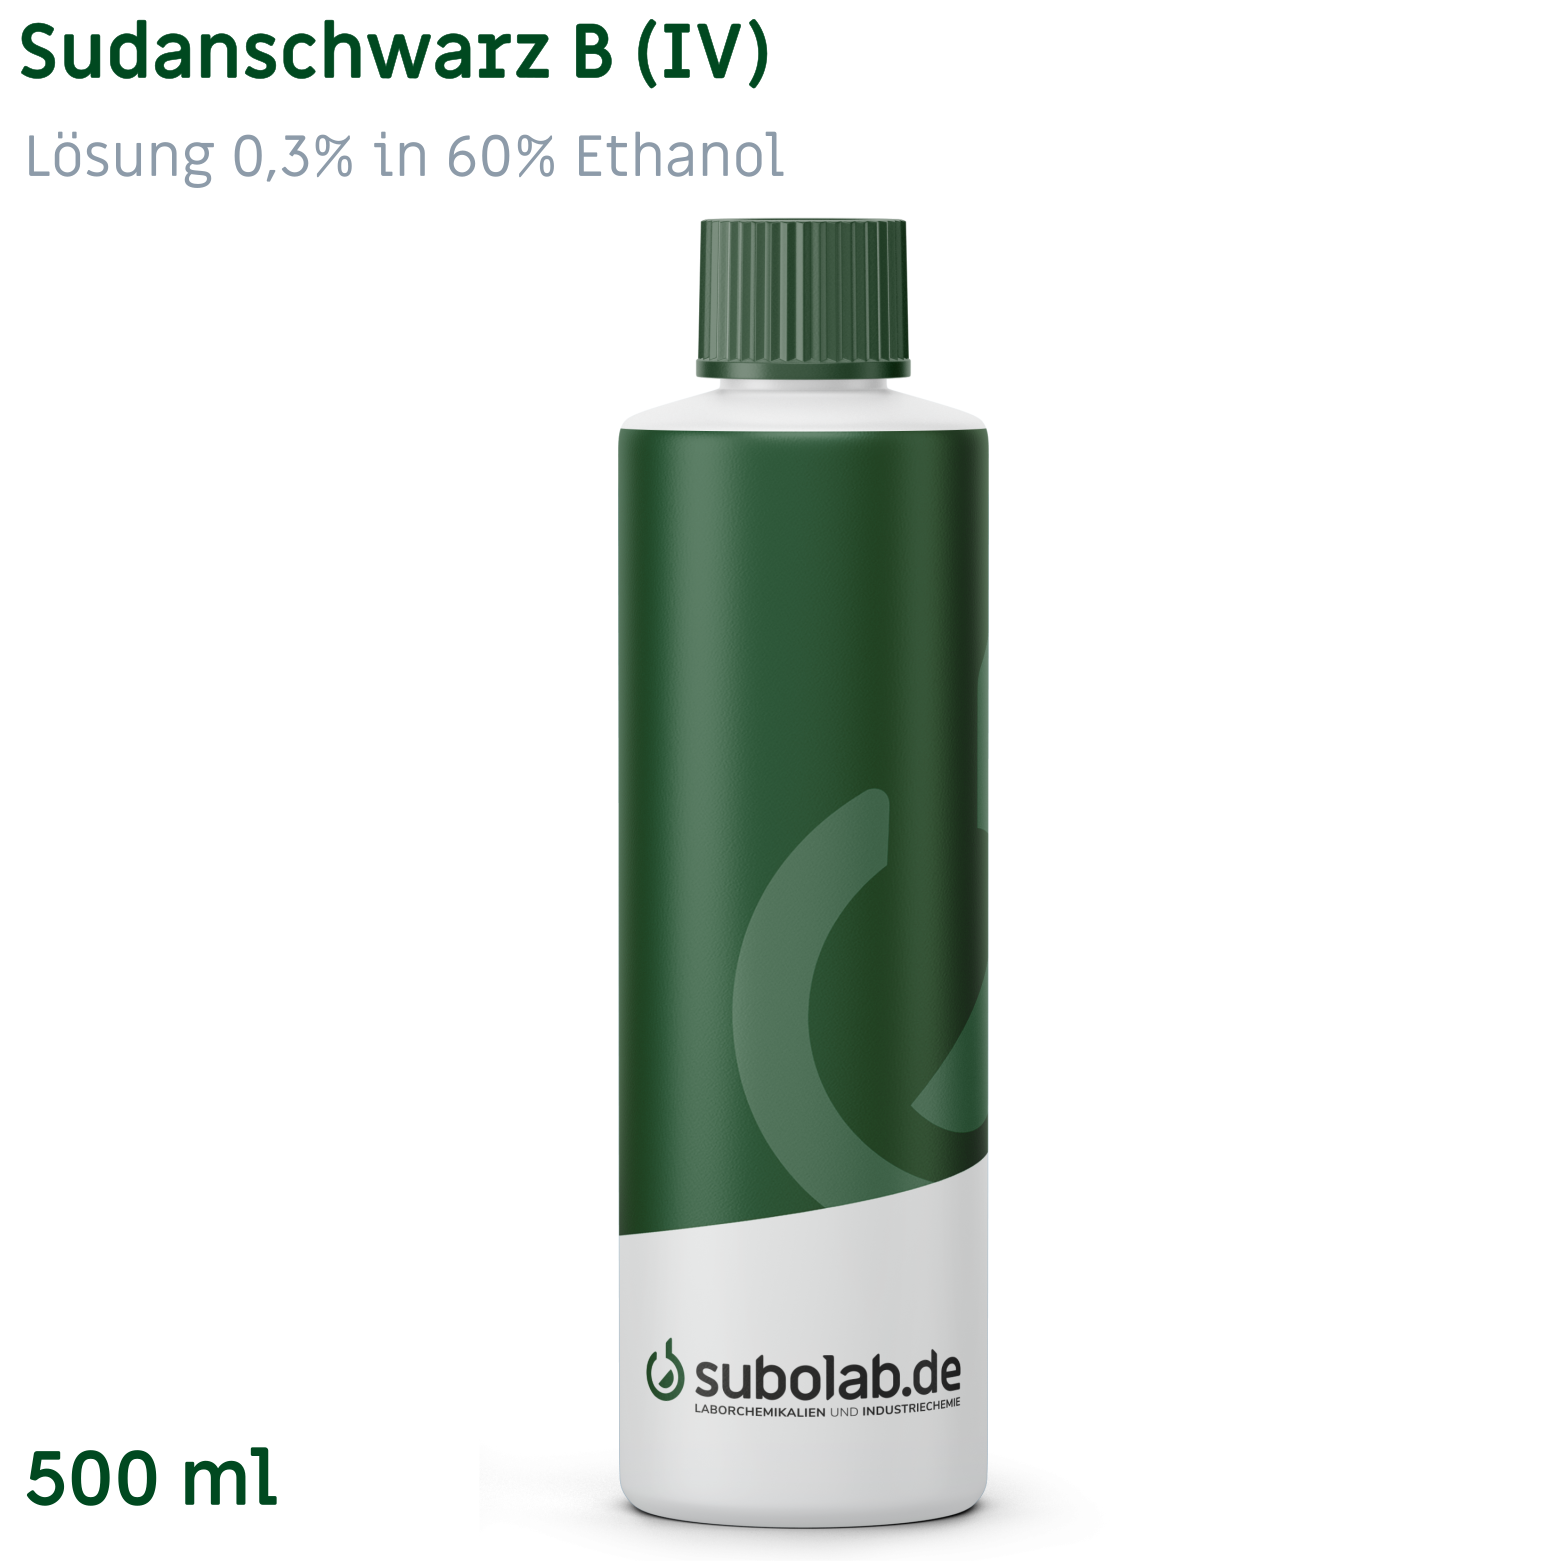 Bild von Sudanschwarz B (IV) - Lösung 0,3% in 60% Ethanol (500 ml)